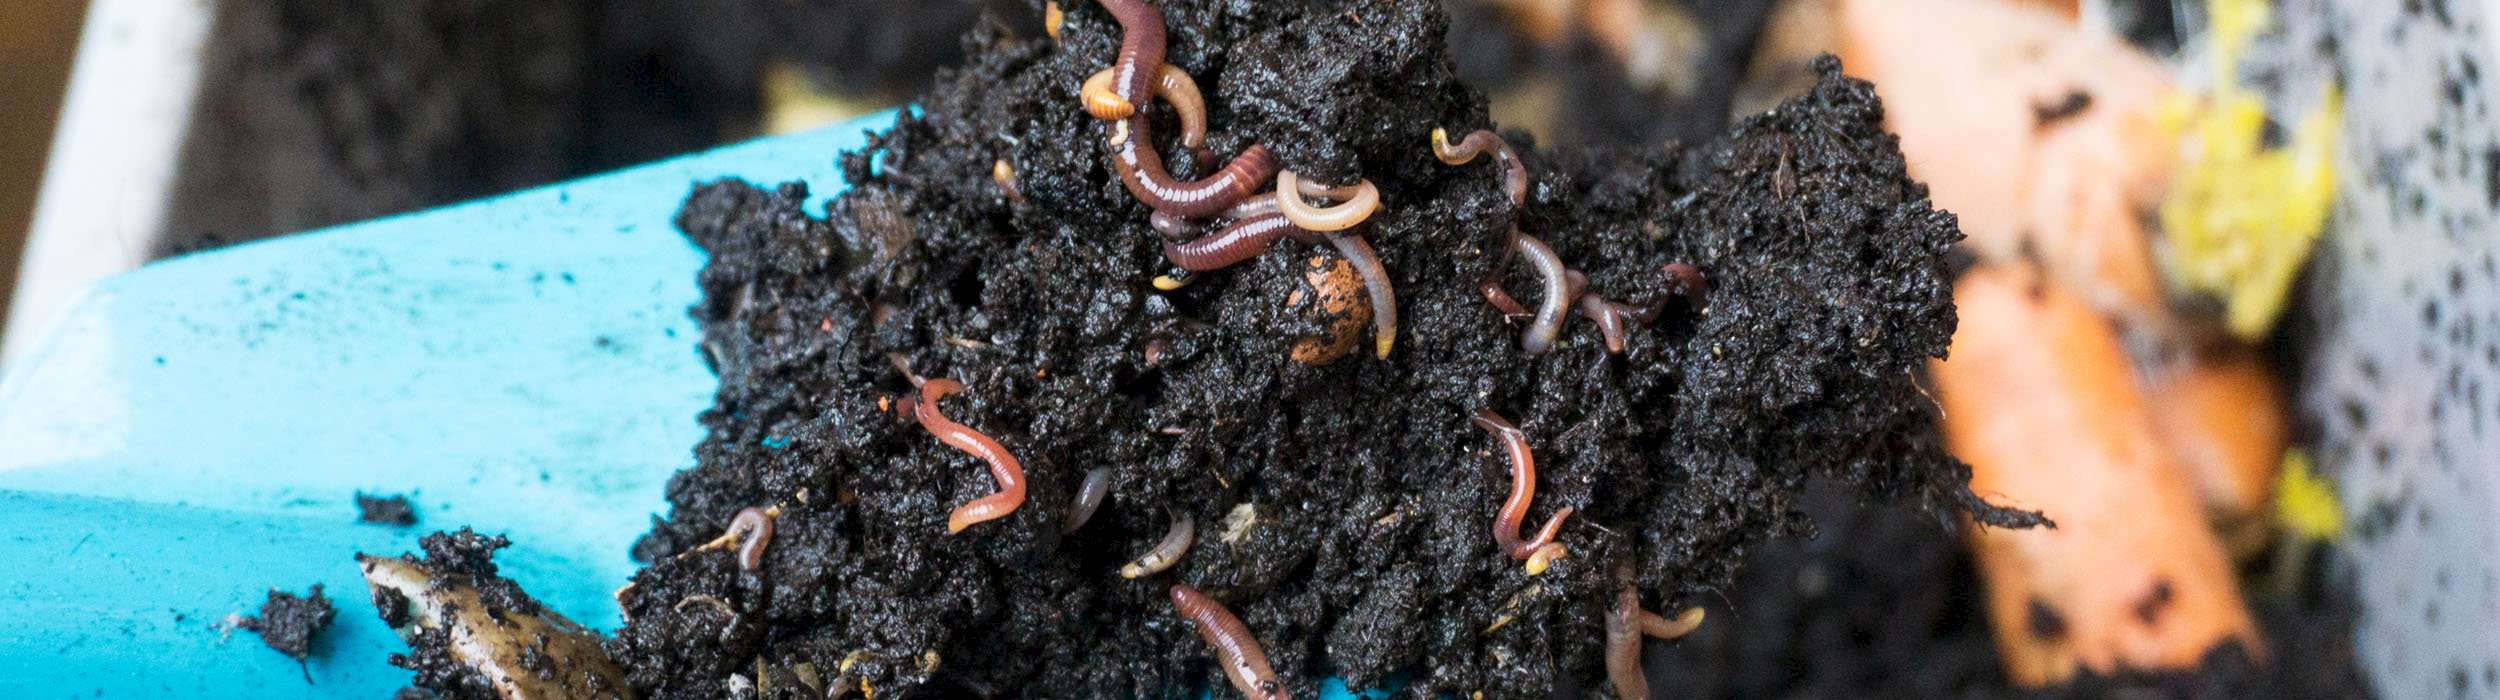 Erde mit Würmern aus der Wurmkiste